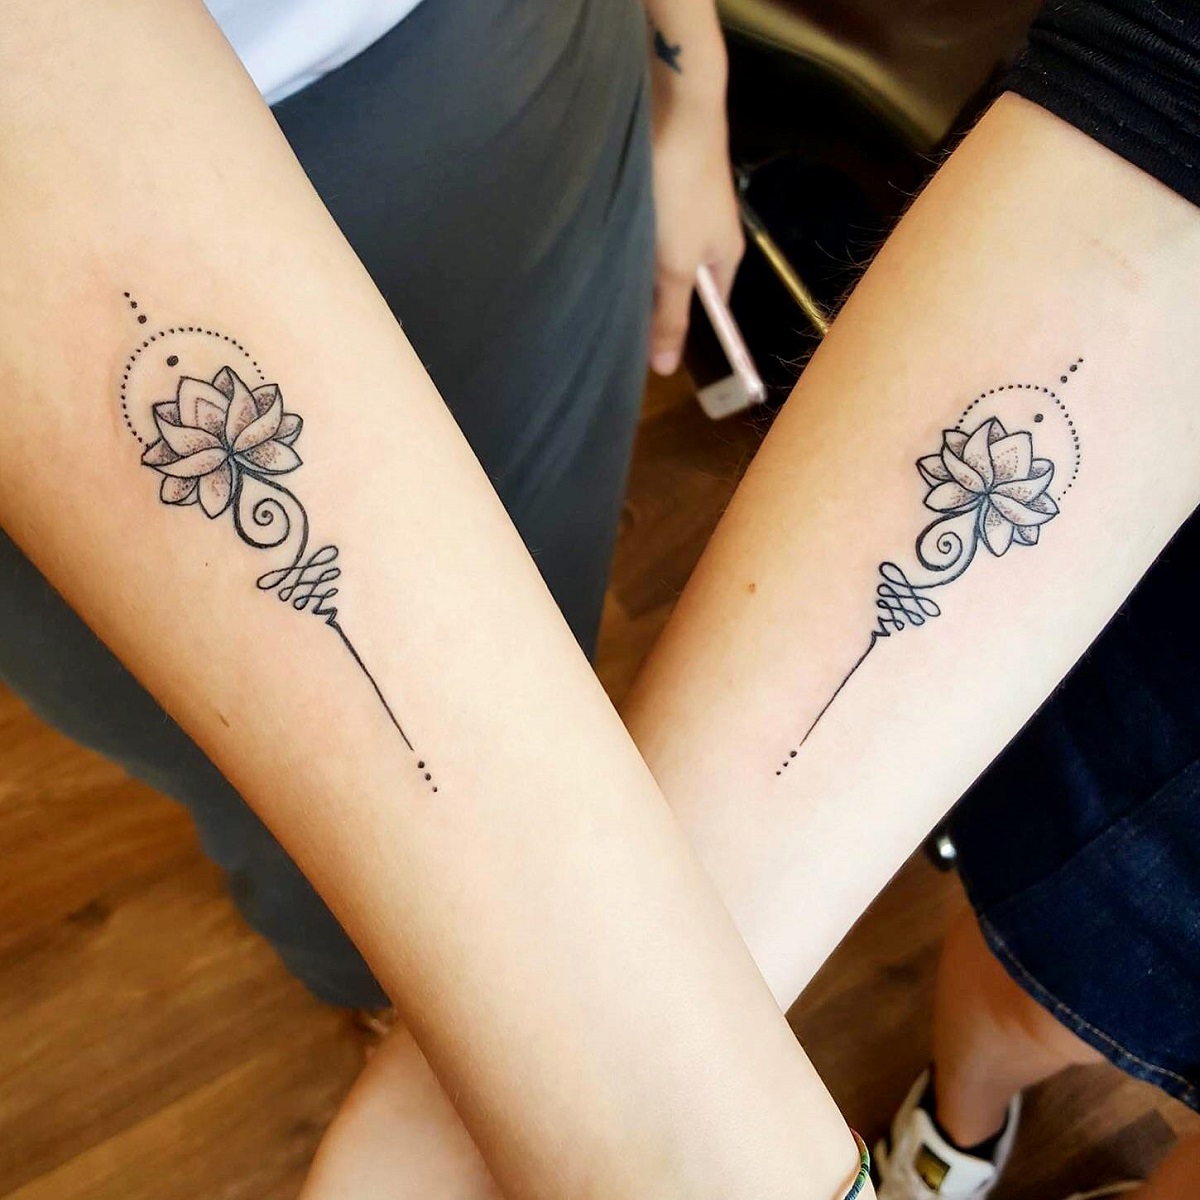 Hình xăm Heo Xăm hình bấm TRUY CẬP để liên hệ | Infinity tattoo, Tattoos